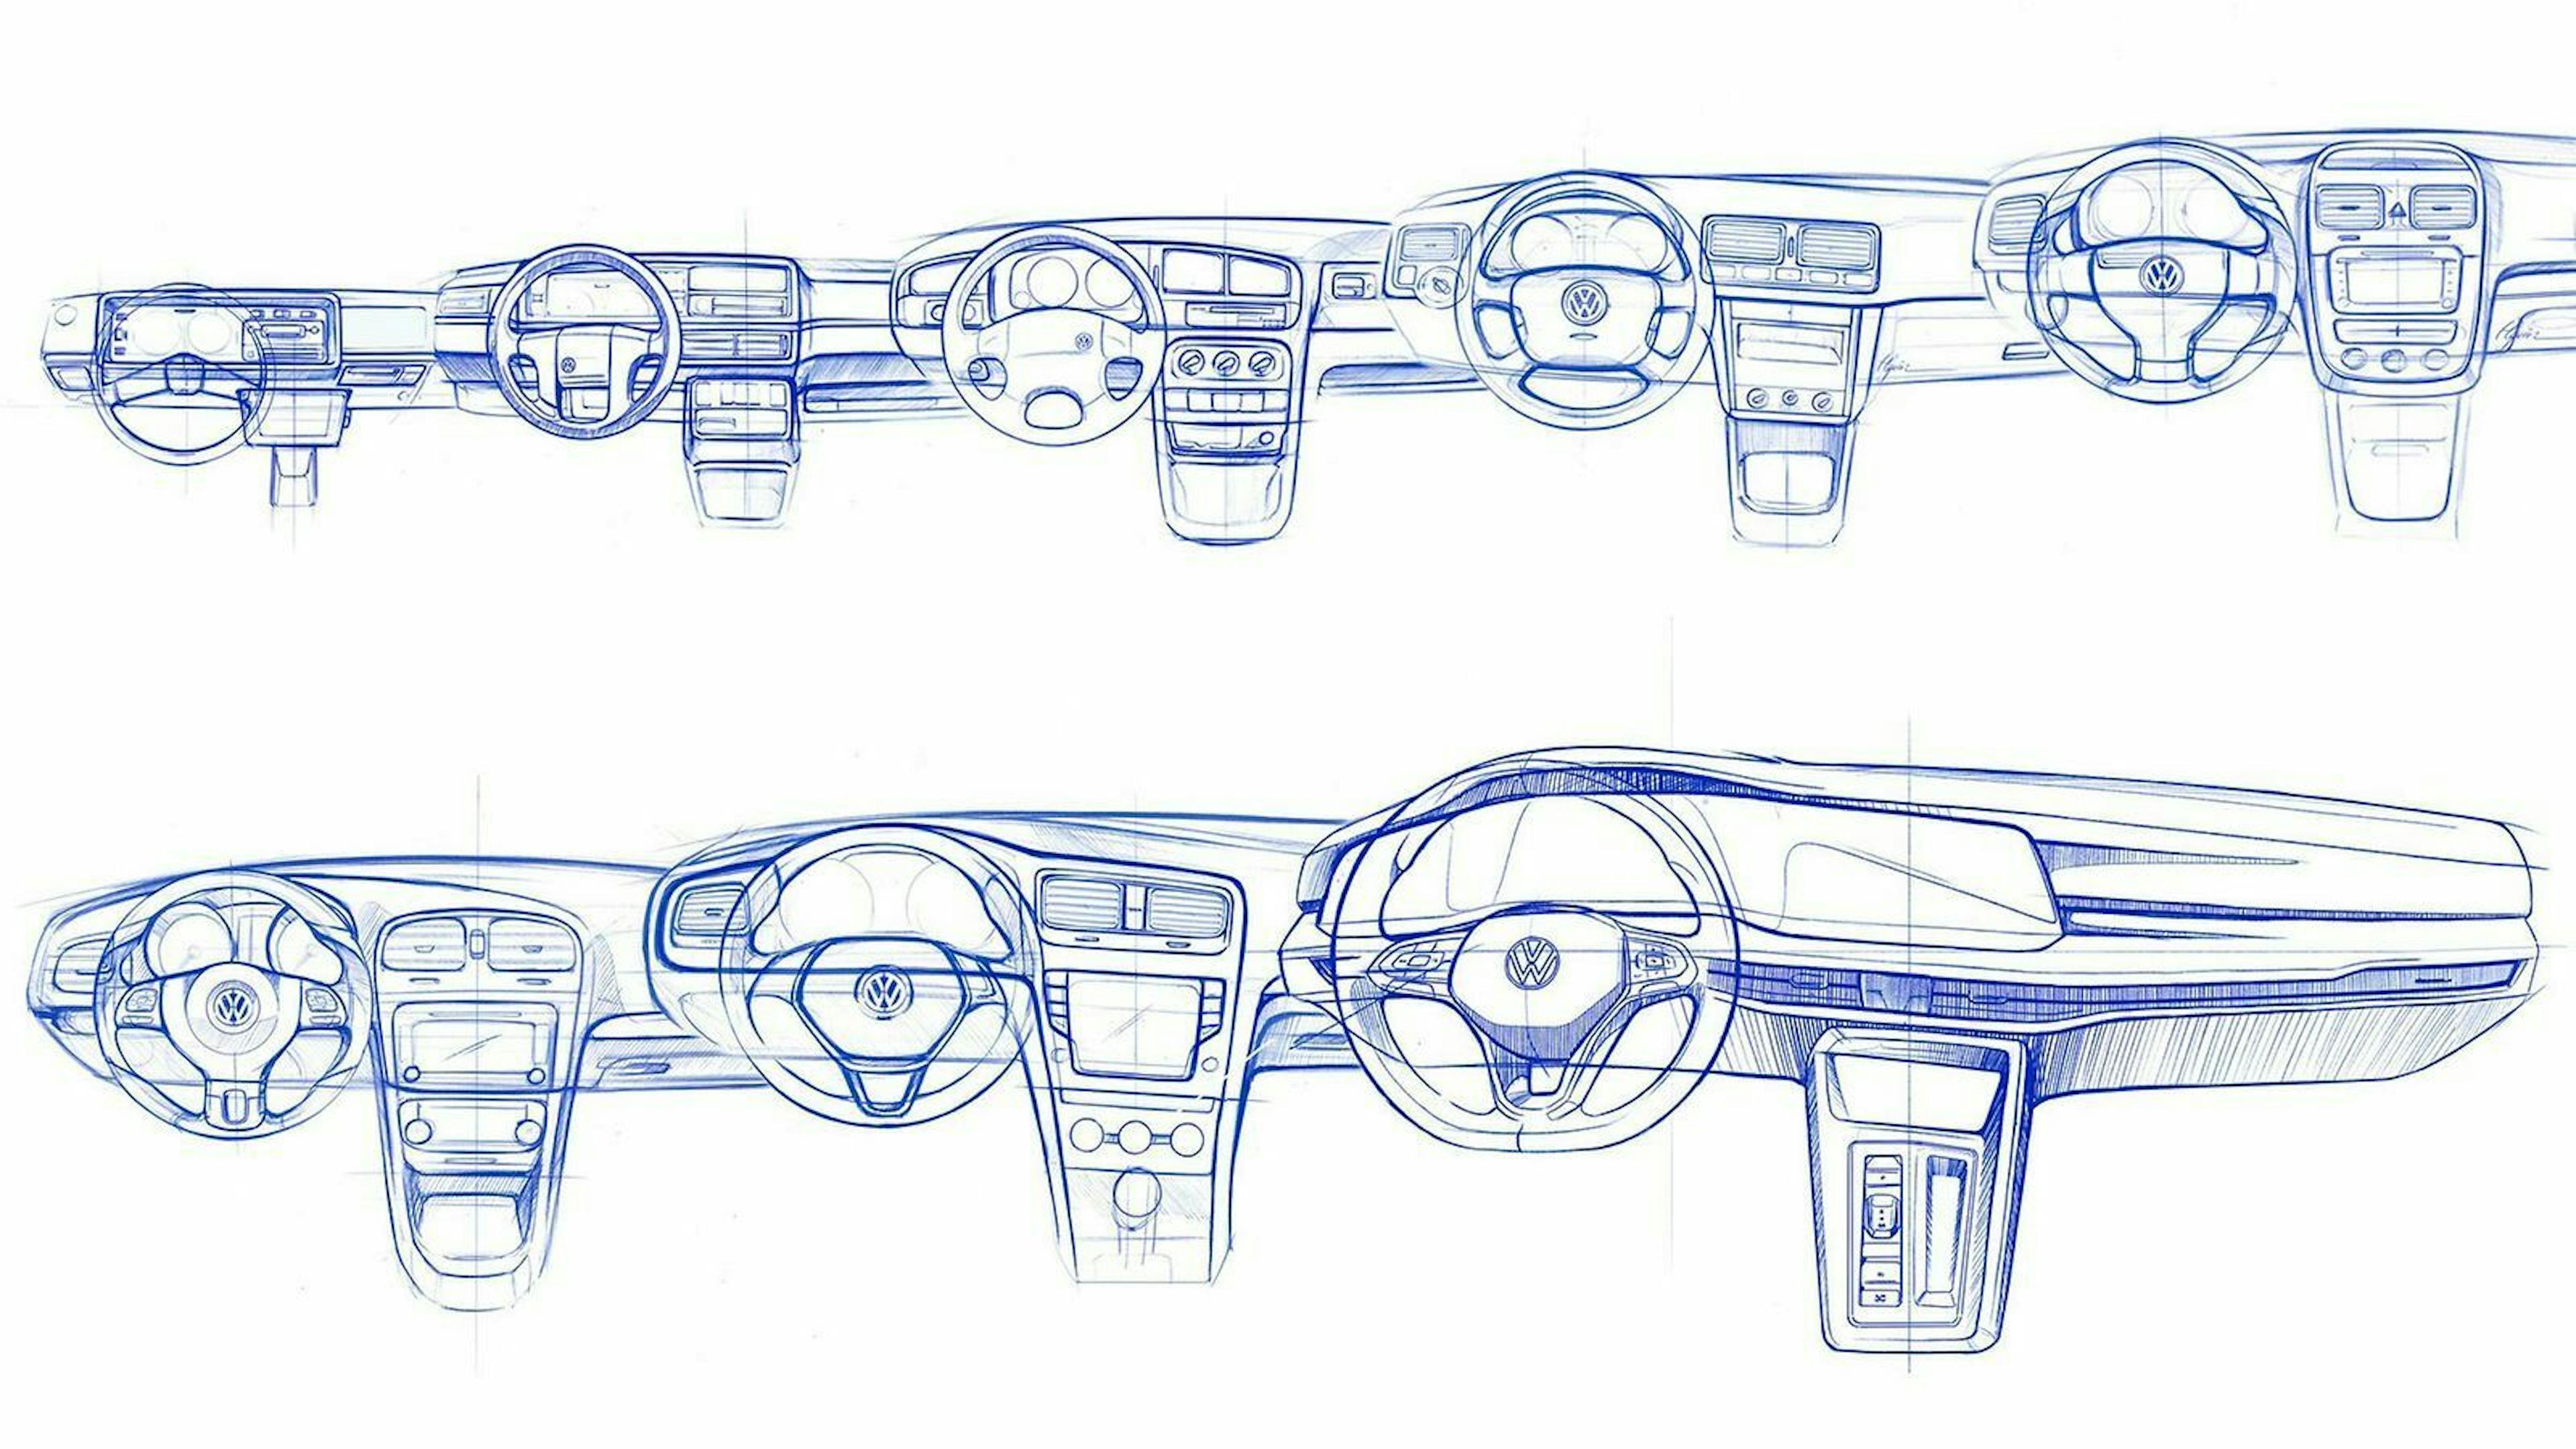 Das Golf-Cockpit im Wandel: vom spartanischen Armaturenbrett im VW Golf 1 zum großen Display im VW Golf 8